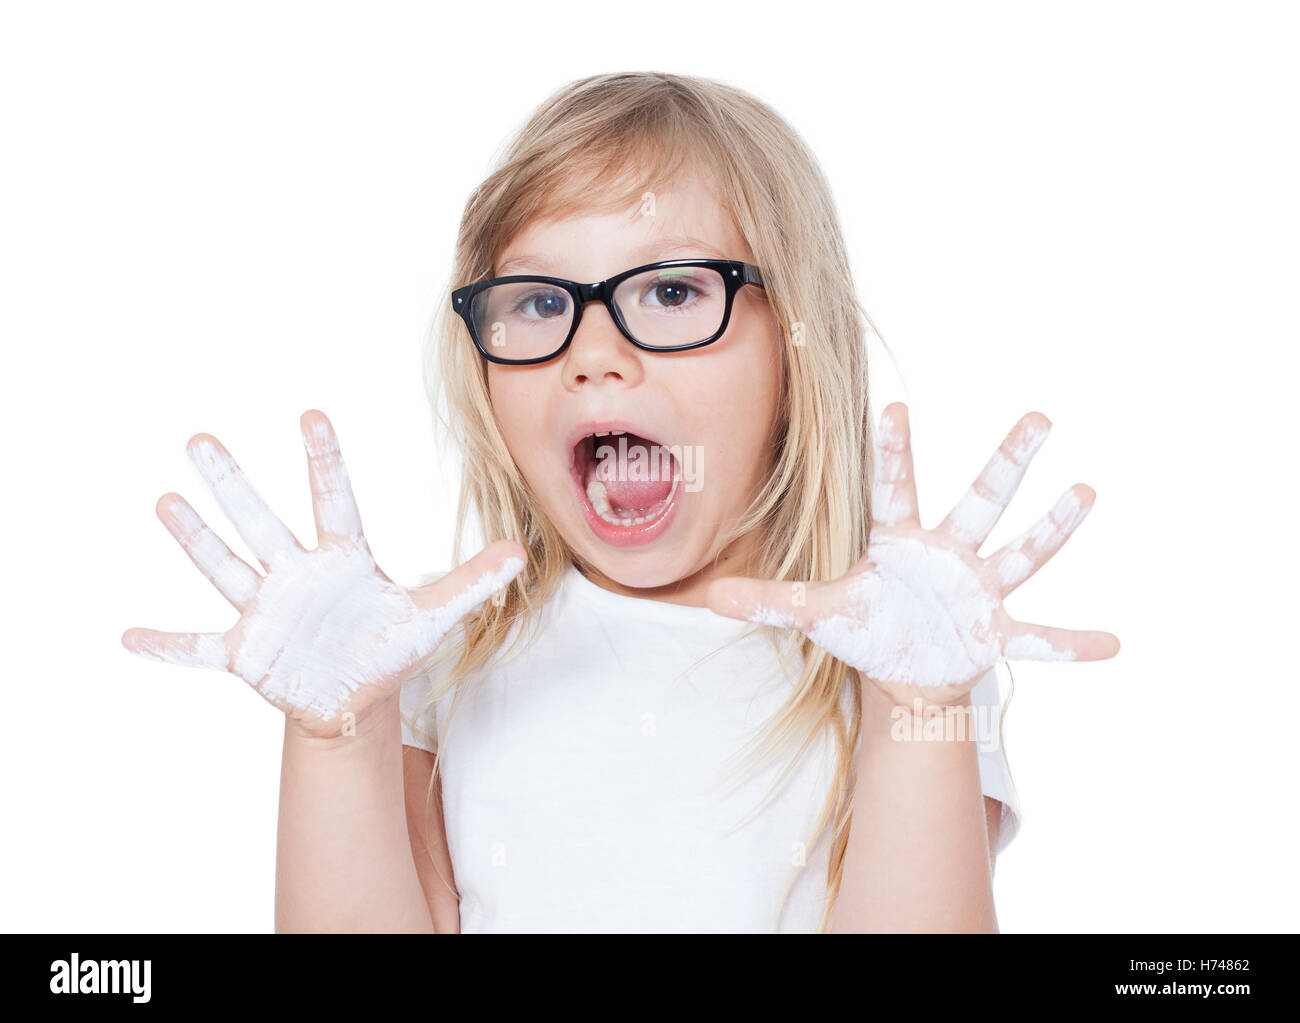 Kind mit bemalten Händen auf einem weißen Hintergrund Stockfoto